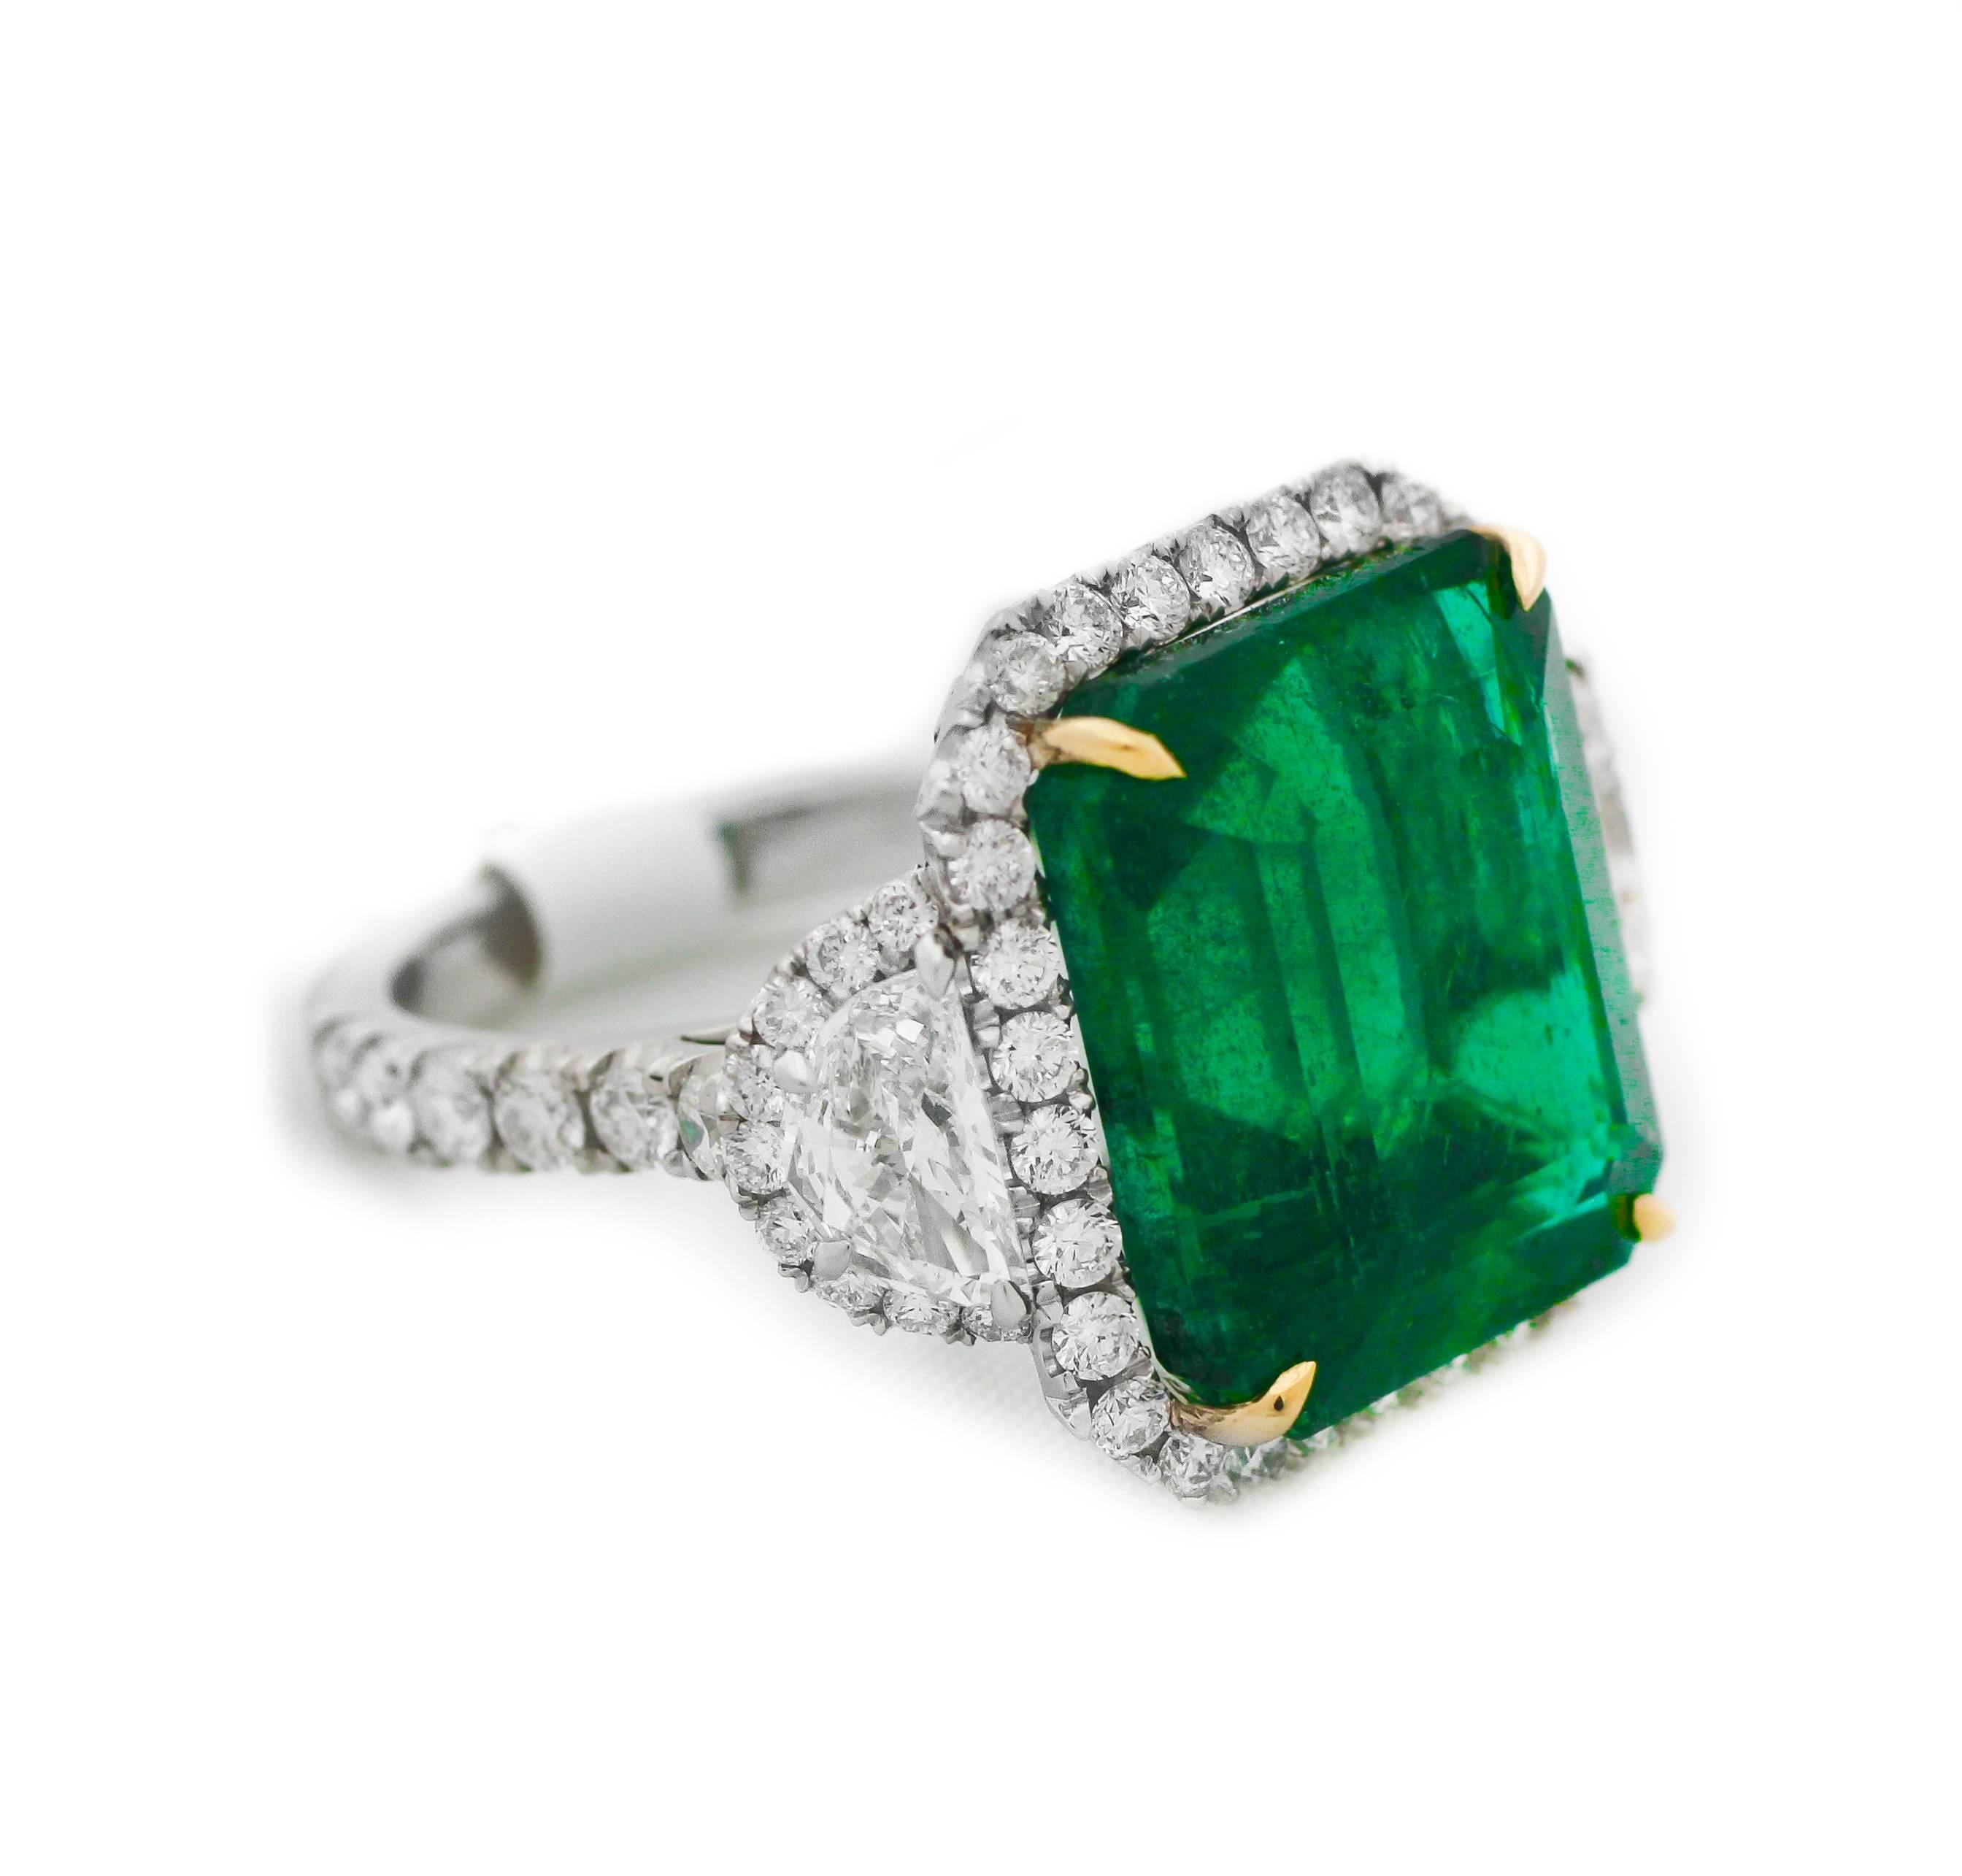 GIA-zertifizierter grüner Smaragd- und Diamantring, mit 14,13 Karat grünem Smaragd im Smaragdschliff, zertifiziert von GIA, besetzt mit zwei Halbmonden, umgeben von runden Diamanten im Brillantschliff, mit insgesamt 3,50 Karat Diamanten 
Hergestellt